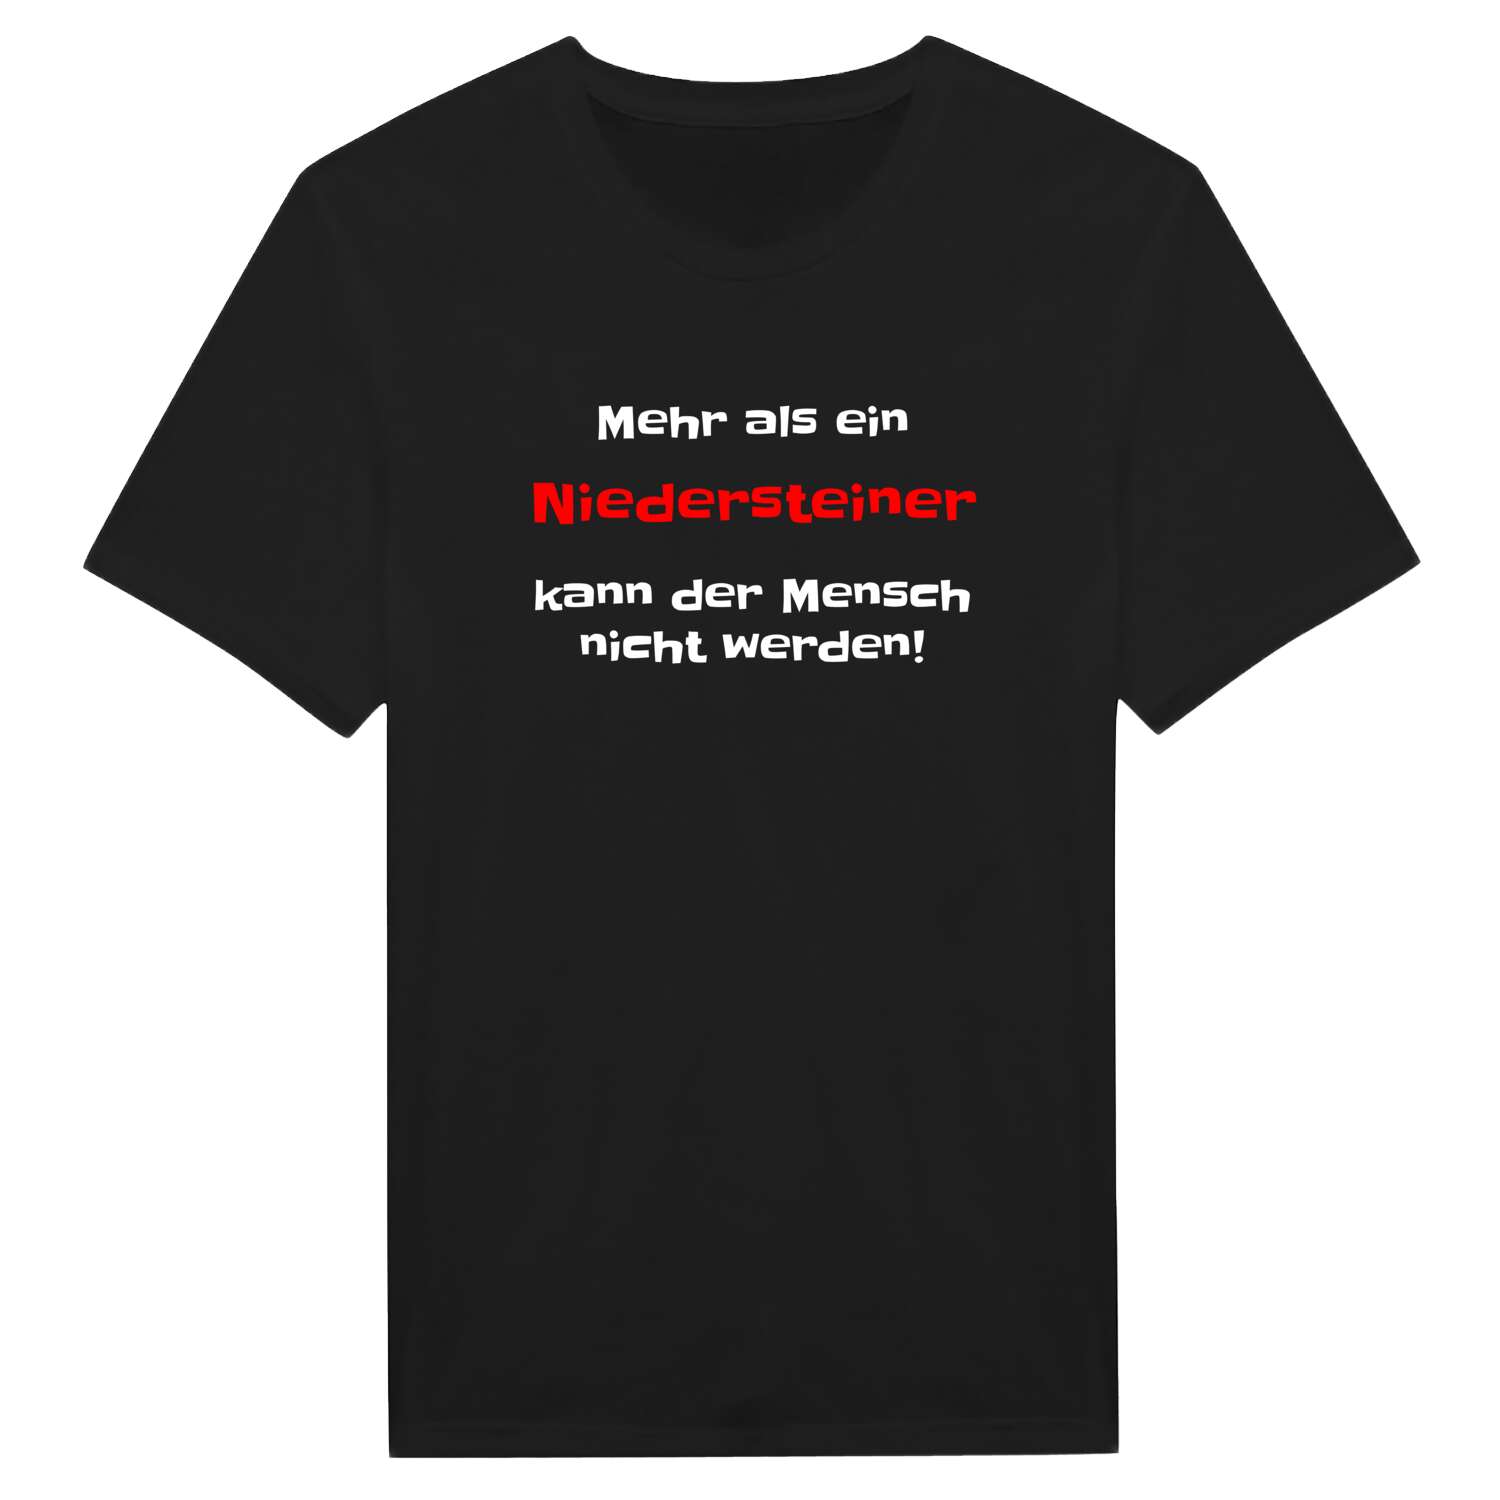 Niederstein T-Shirt »Mehr als ein«